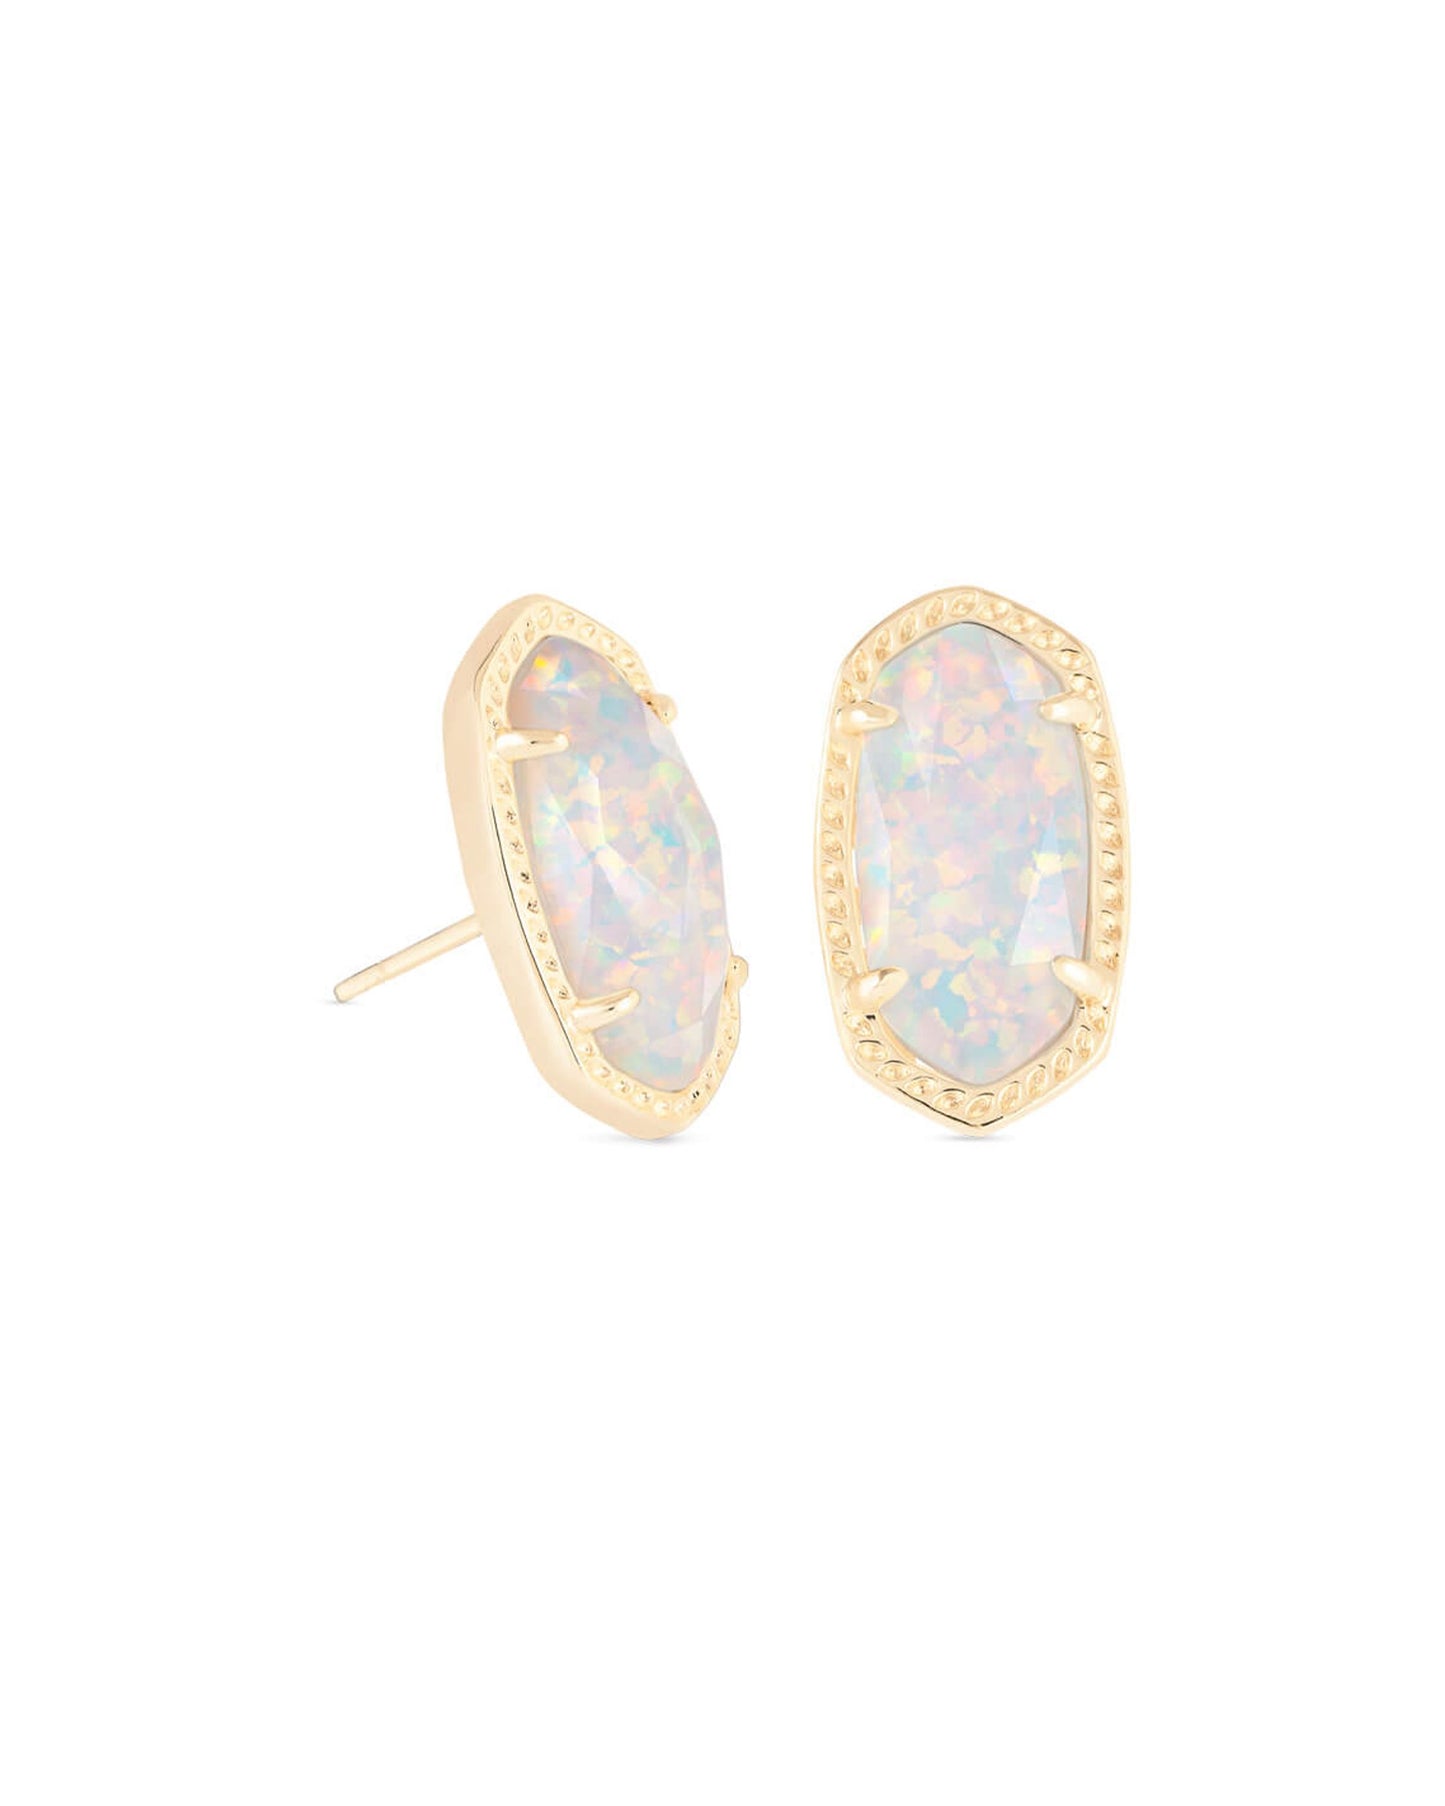 Kendra Scott Ellie Stud Earrings - Gold White Opal